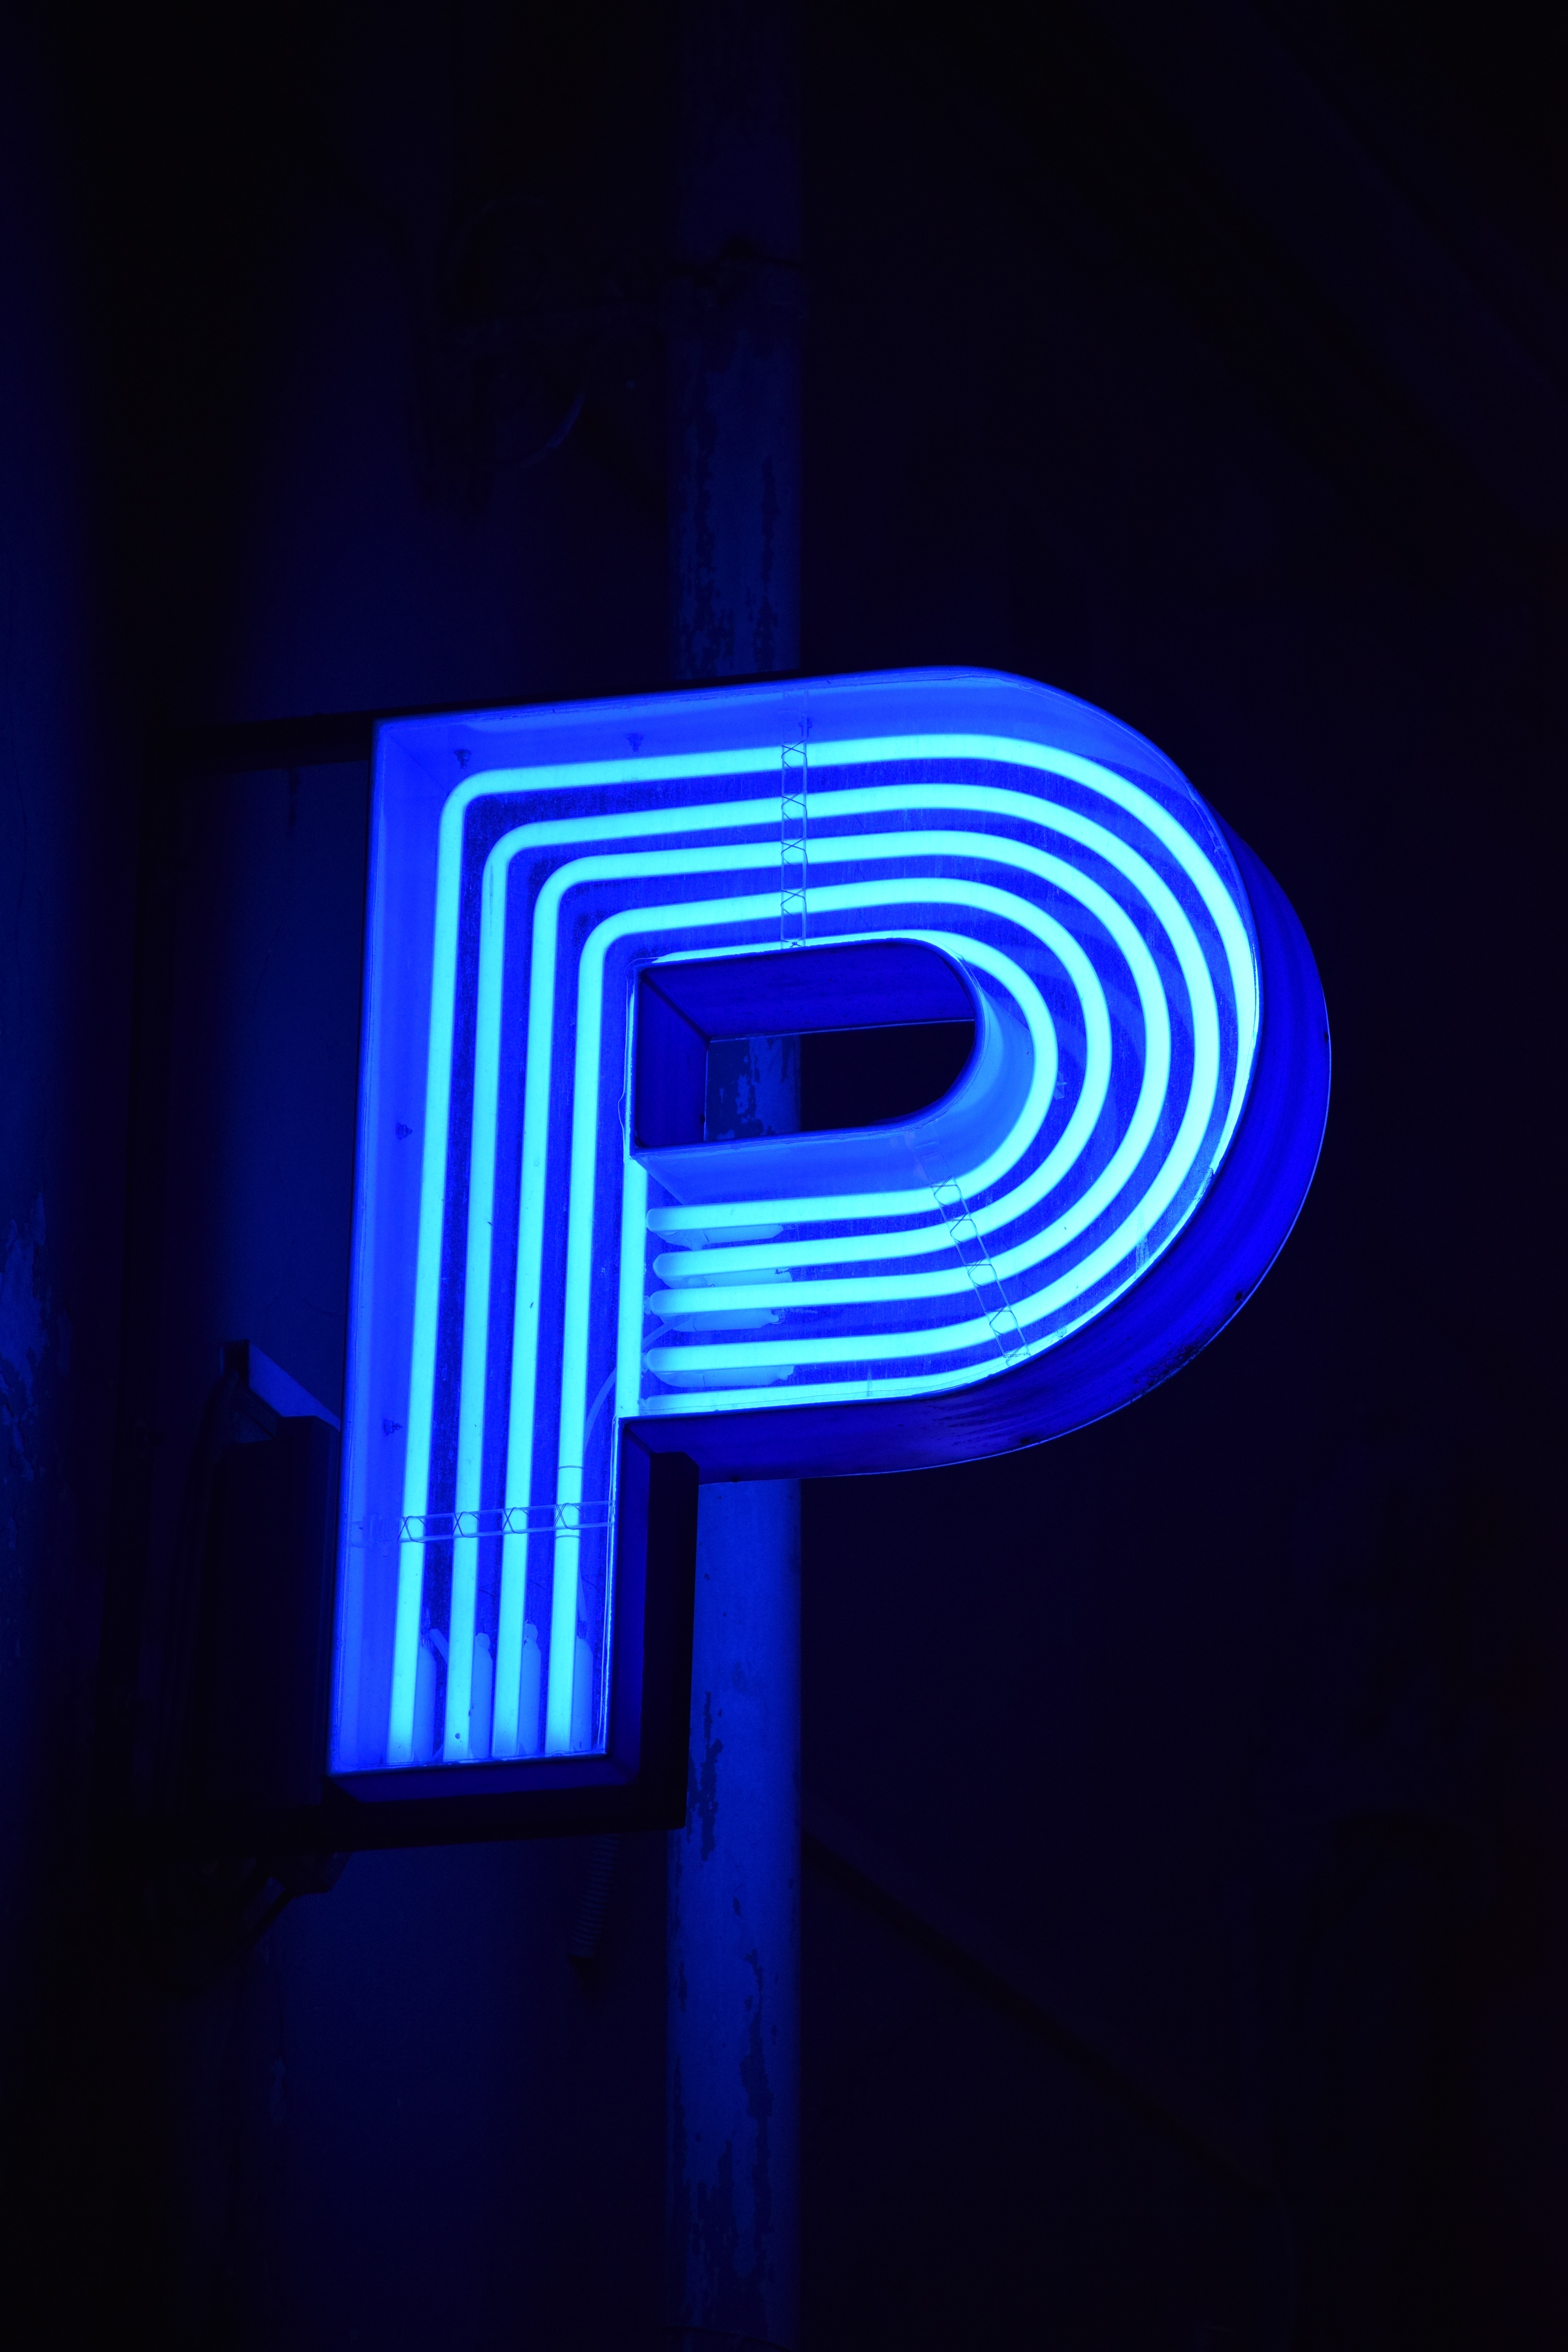 P Letter Design In Neon